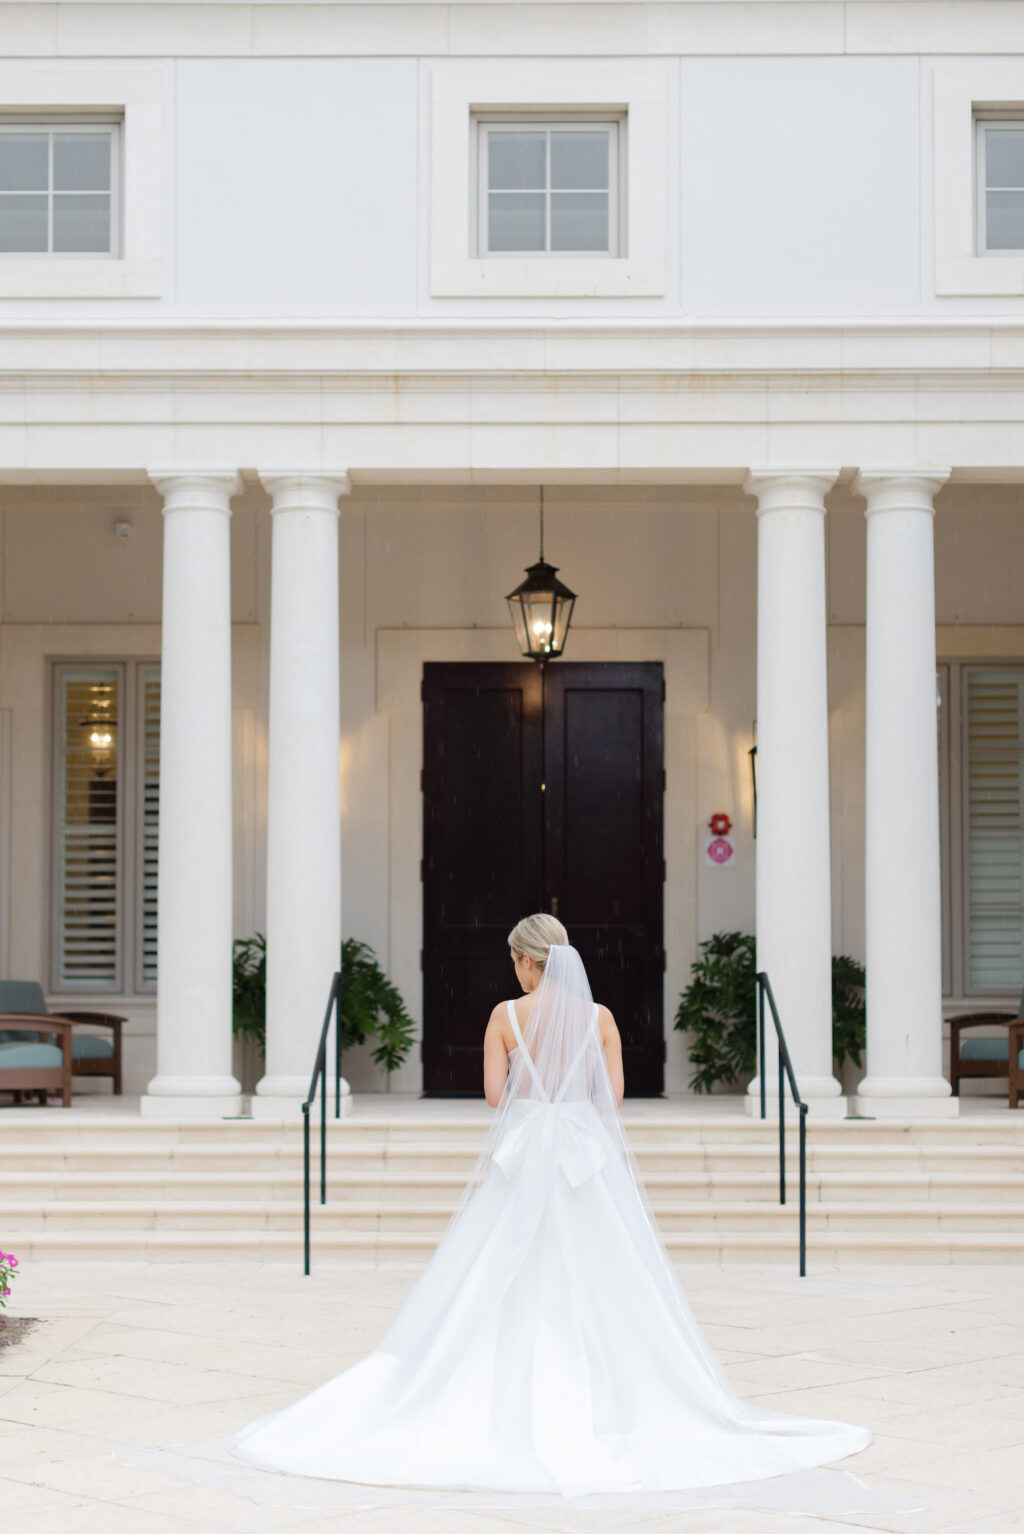 Sheer White Deep V-Back A-Line Martina Liana Wedding Dress with Bow | Sarasota Venue The Concession Golf Club